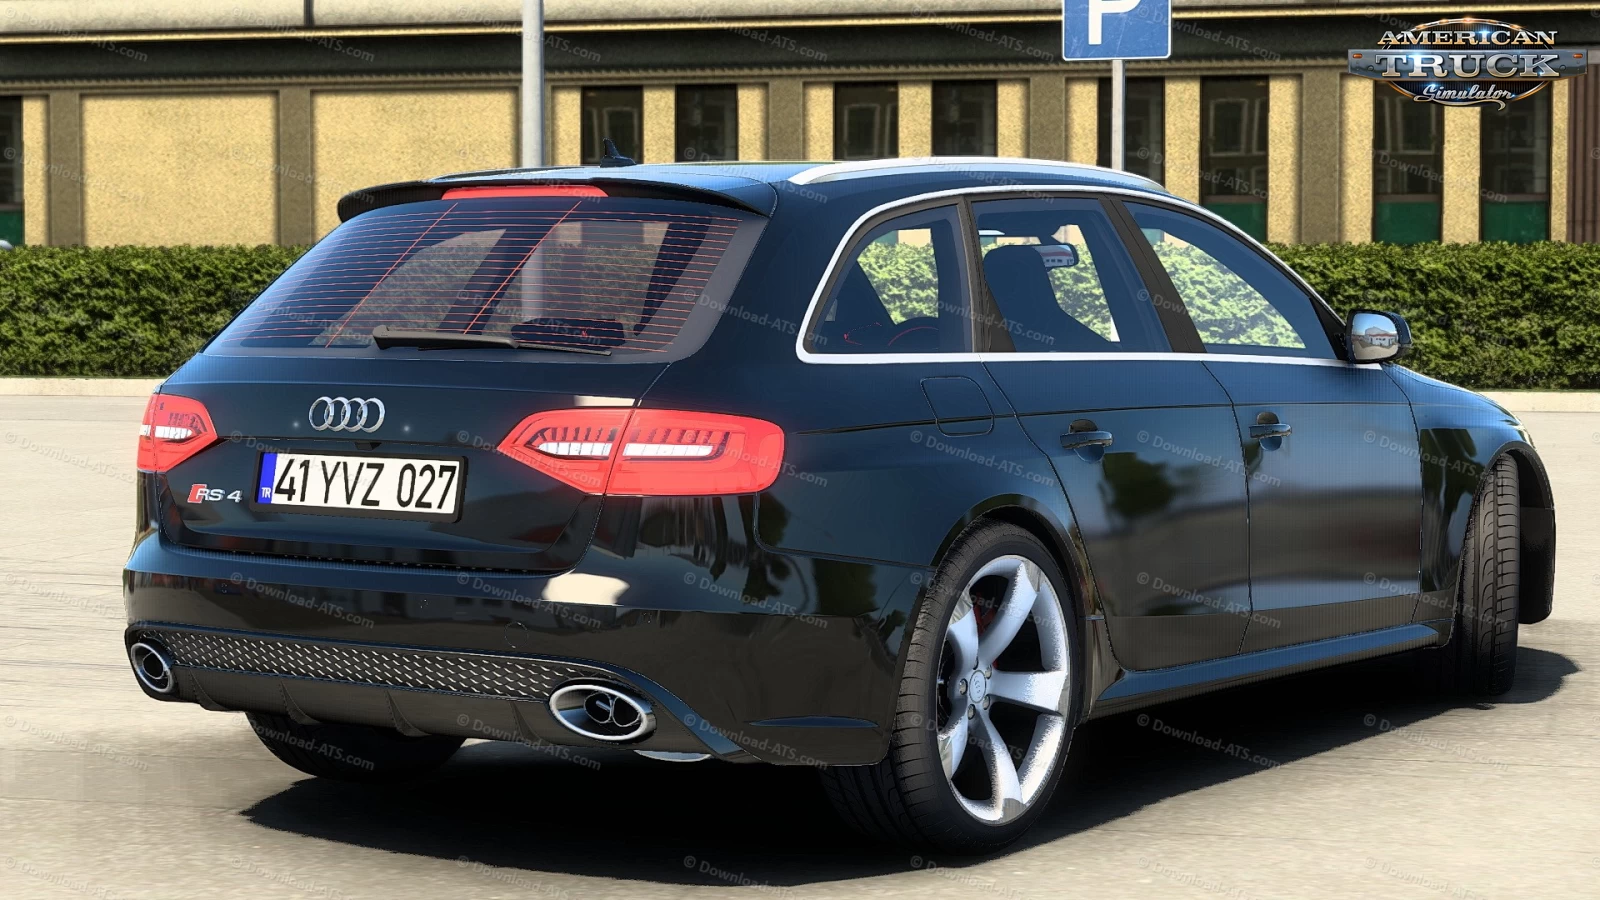 Audi RS4 Avant 2013 + Interior v1.0 (1.43.x) for ATS